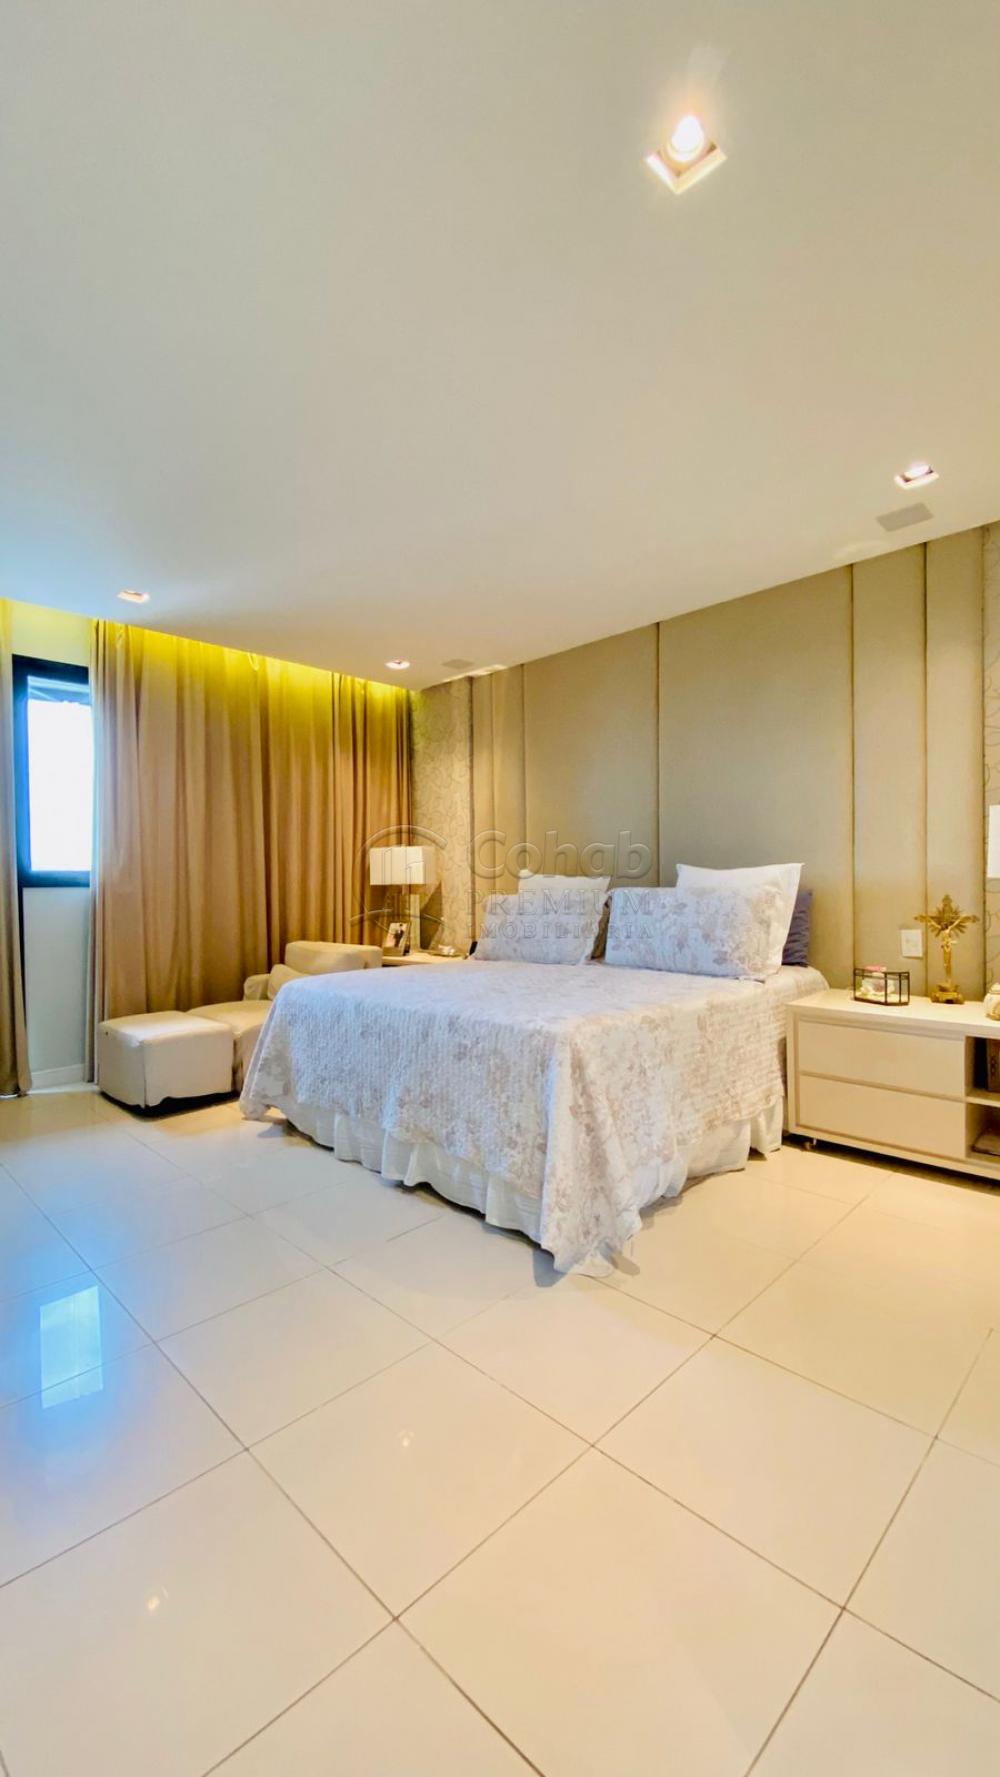 Comprar Apartamento / Padrão em Aracaju R$ 1.800.000,00 - Foto 5